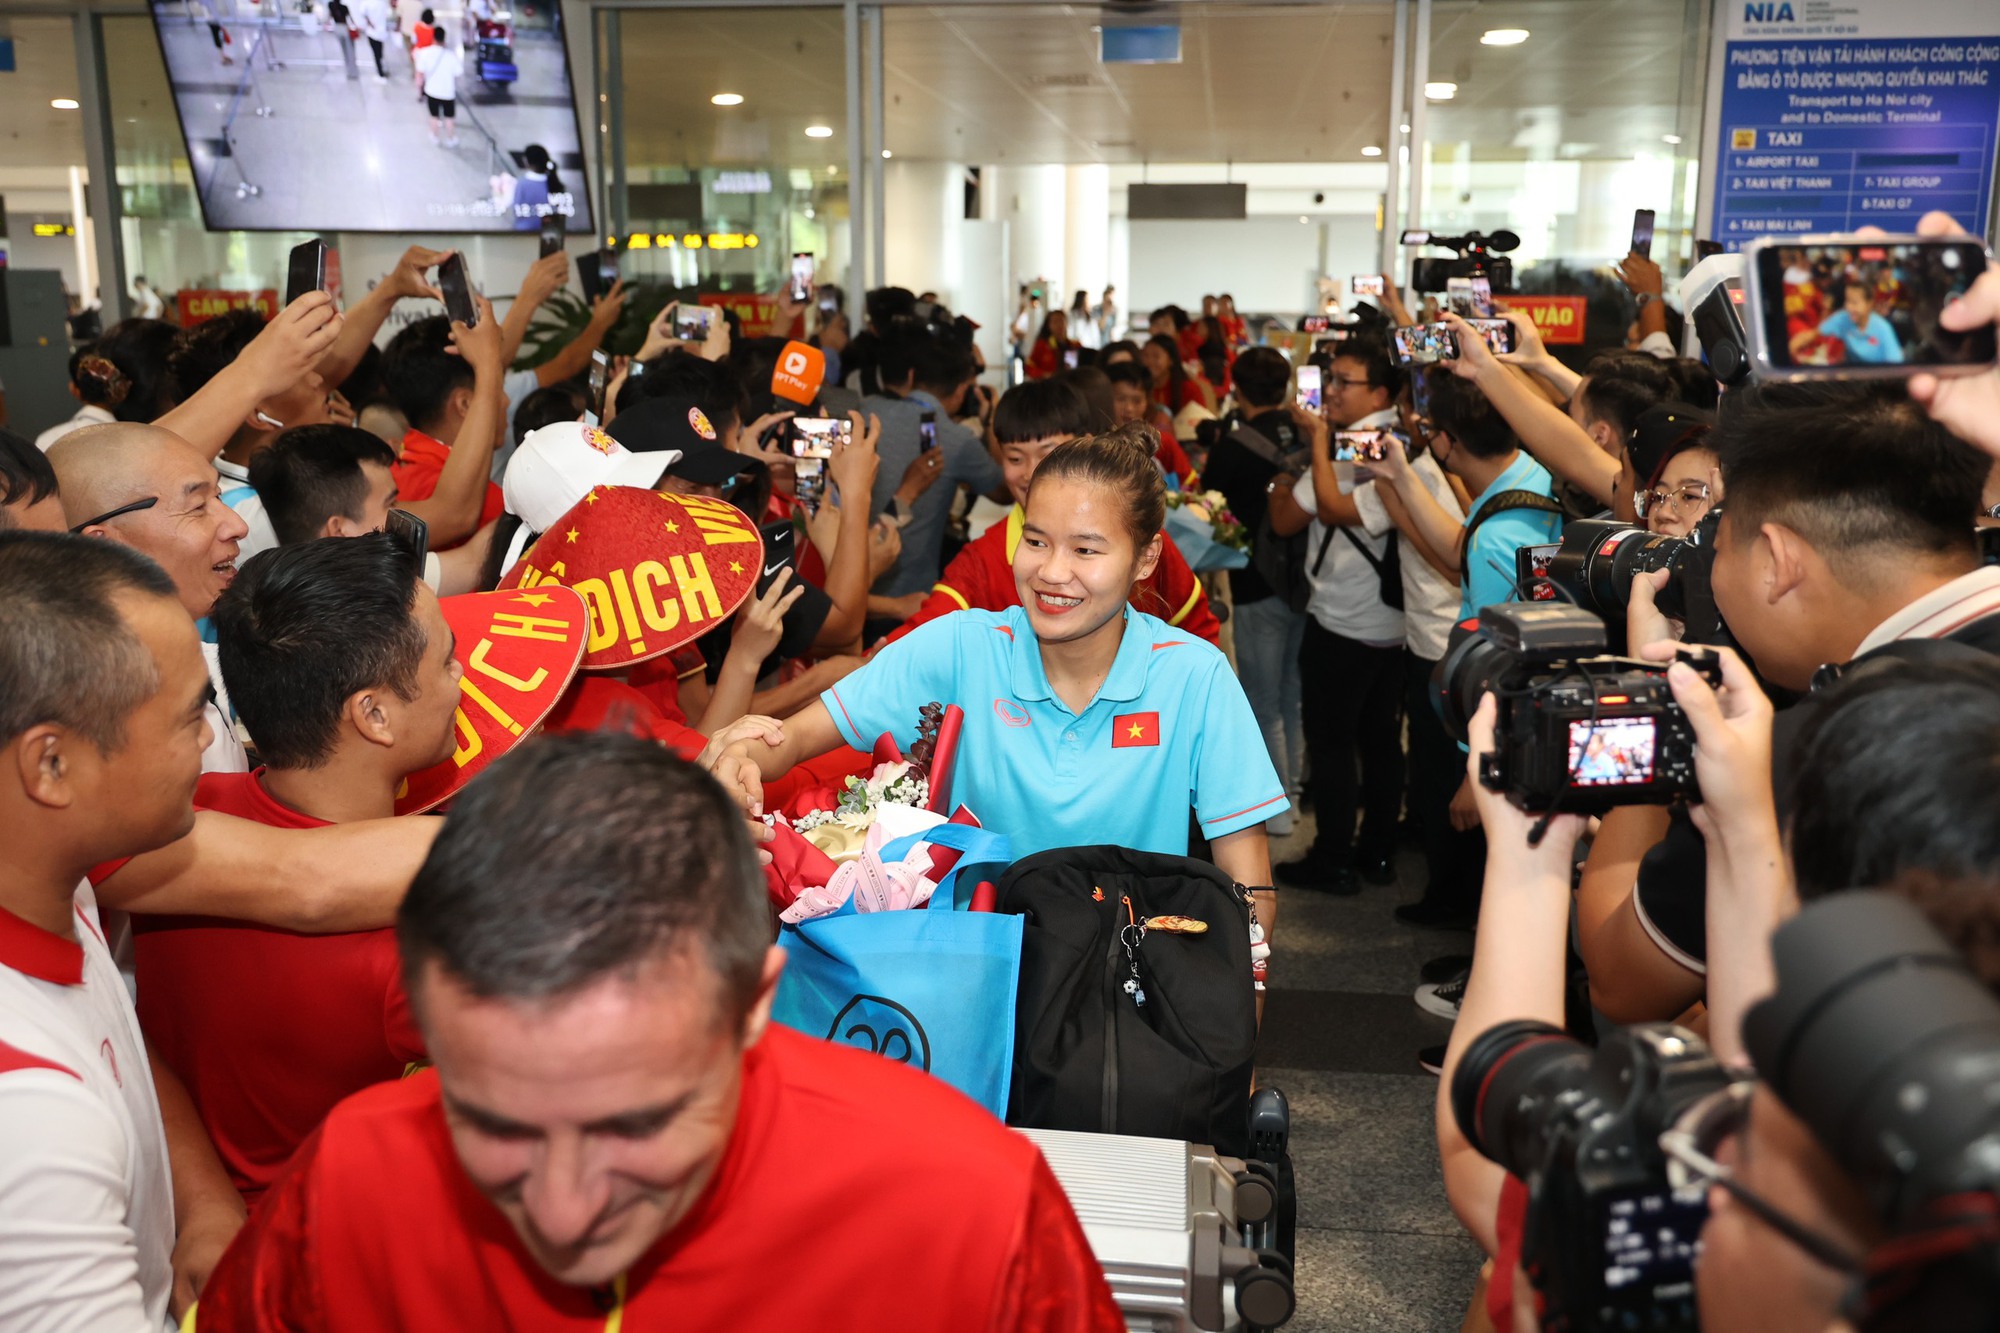 HLV Mai Đức Chung cùng nữ tuyển thủ rạng ngời trở về sau hành trình World Cup lịch sử - Ảnh 3.